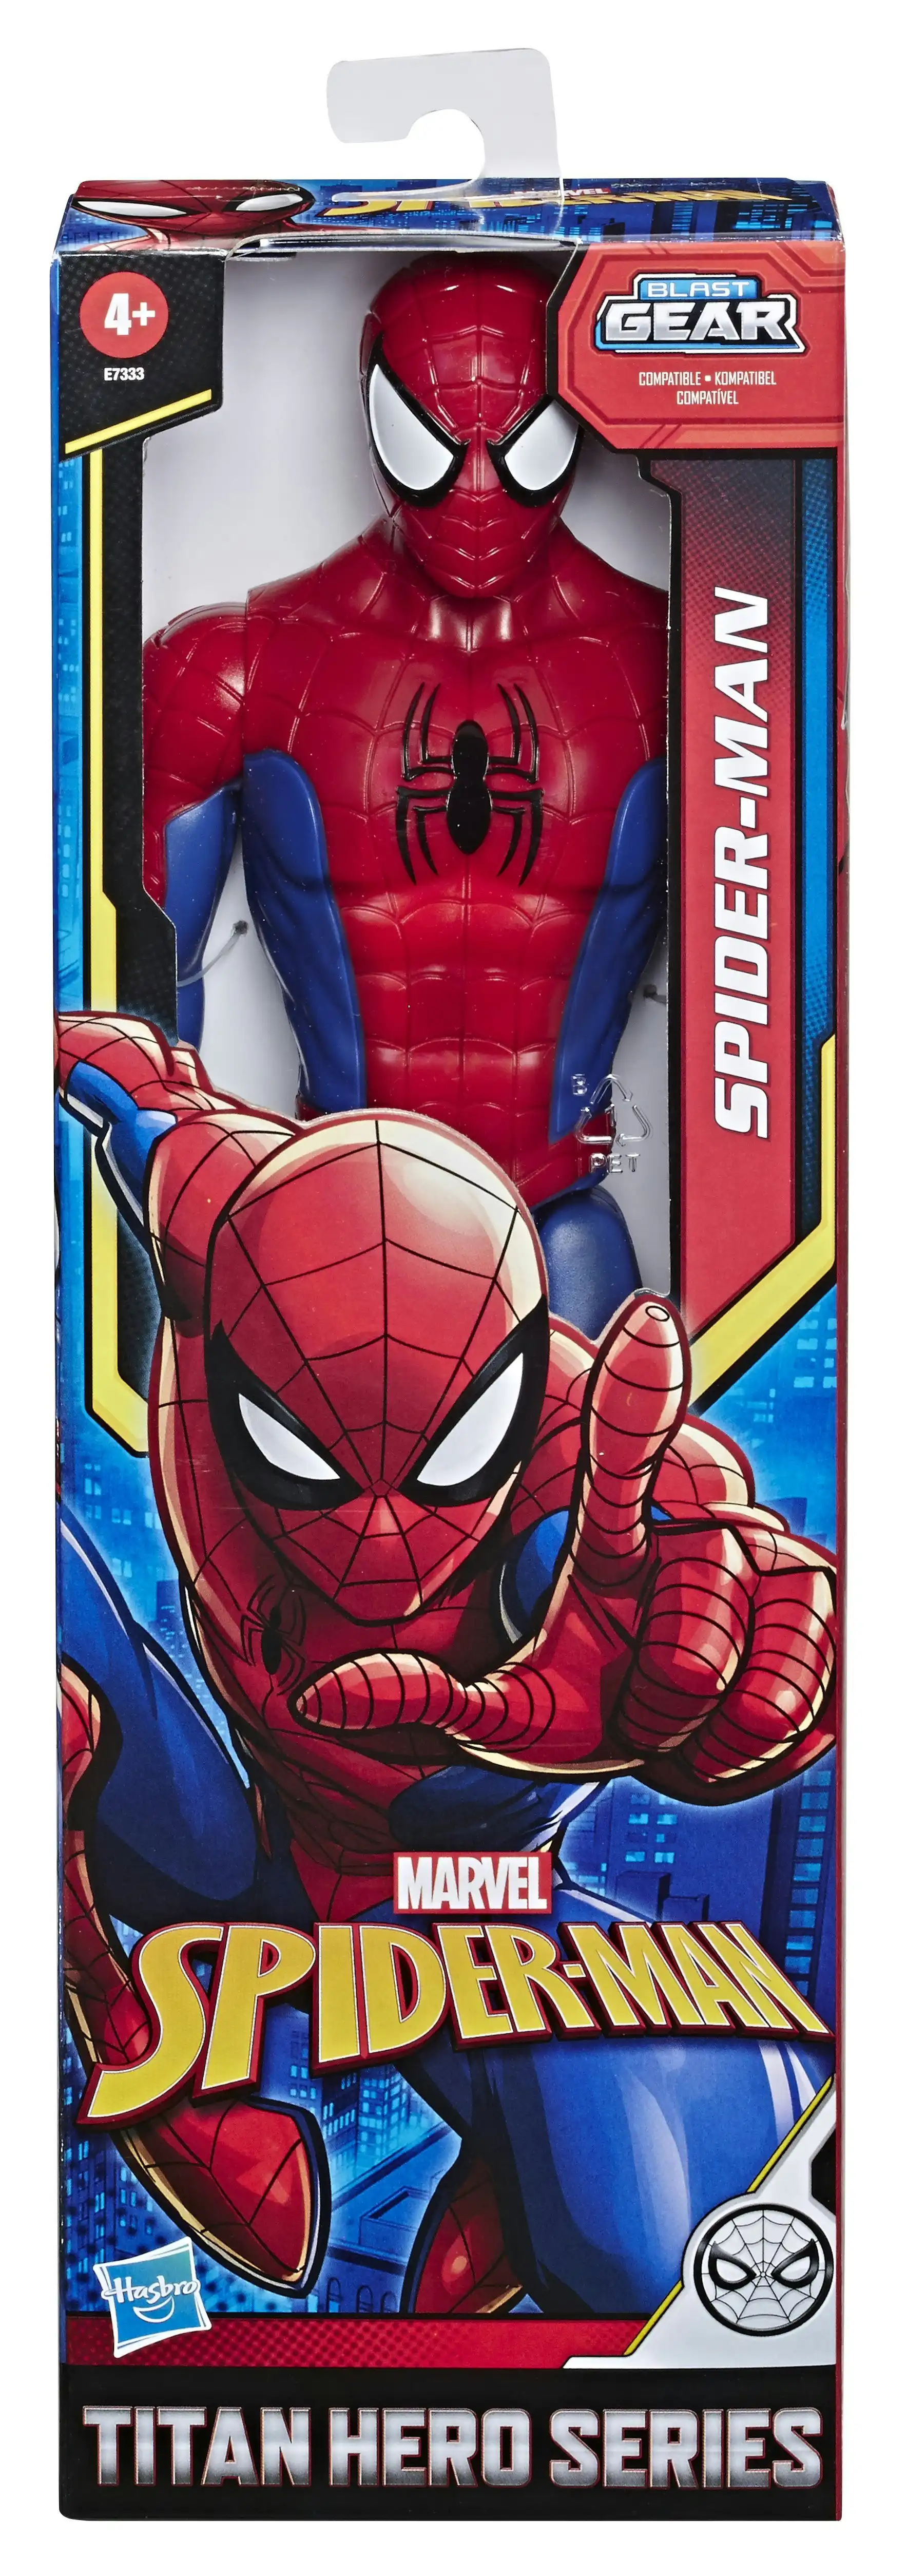 Marvel Spider-Man Titan Hero Series Spider-Man E7333